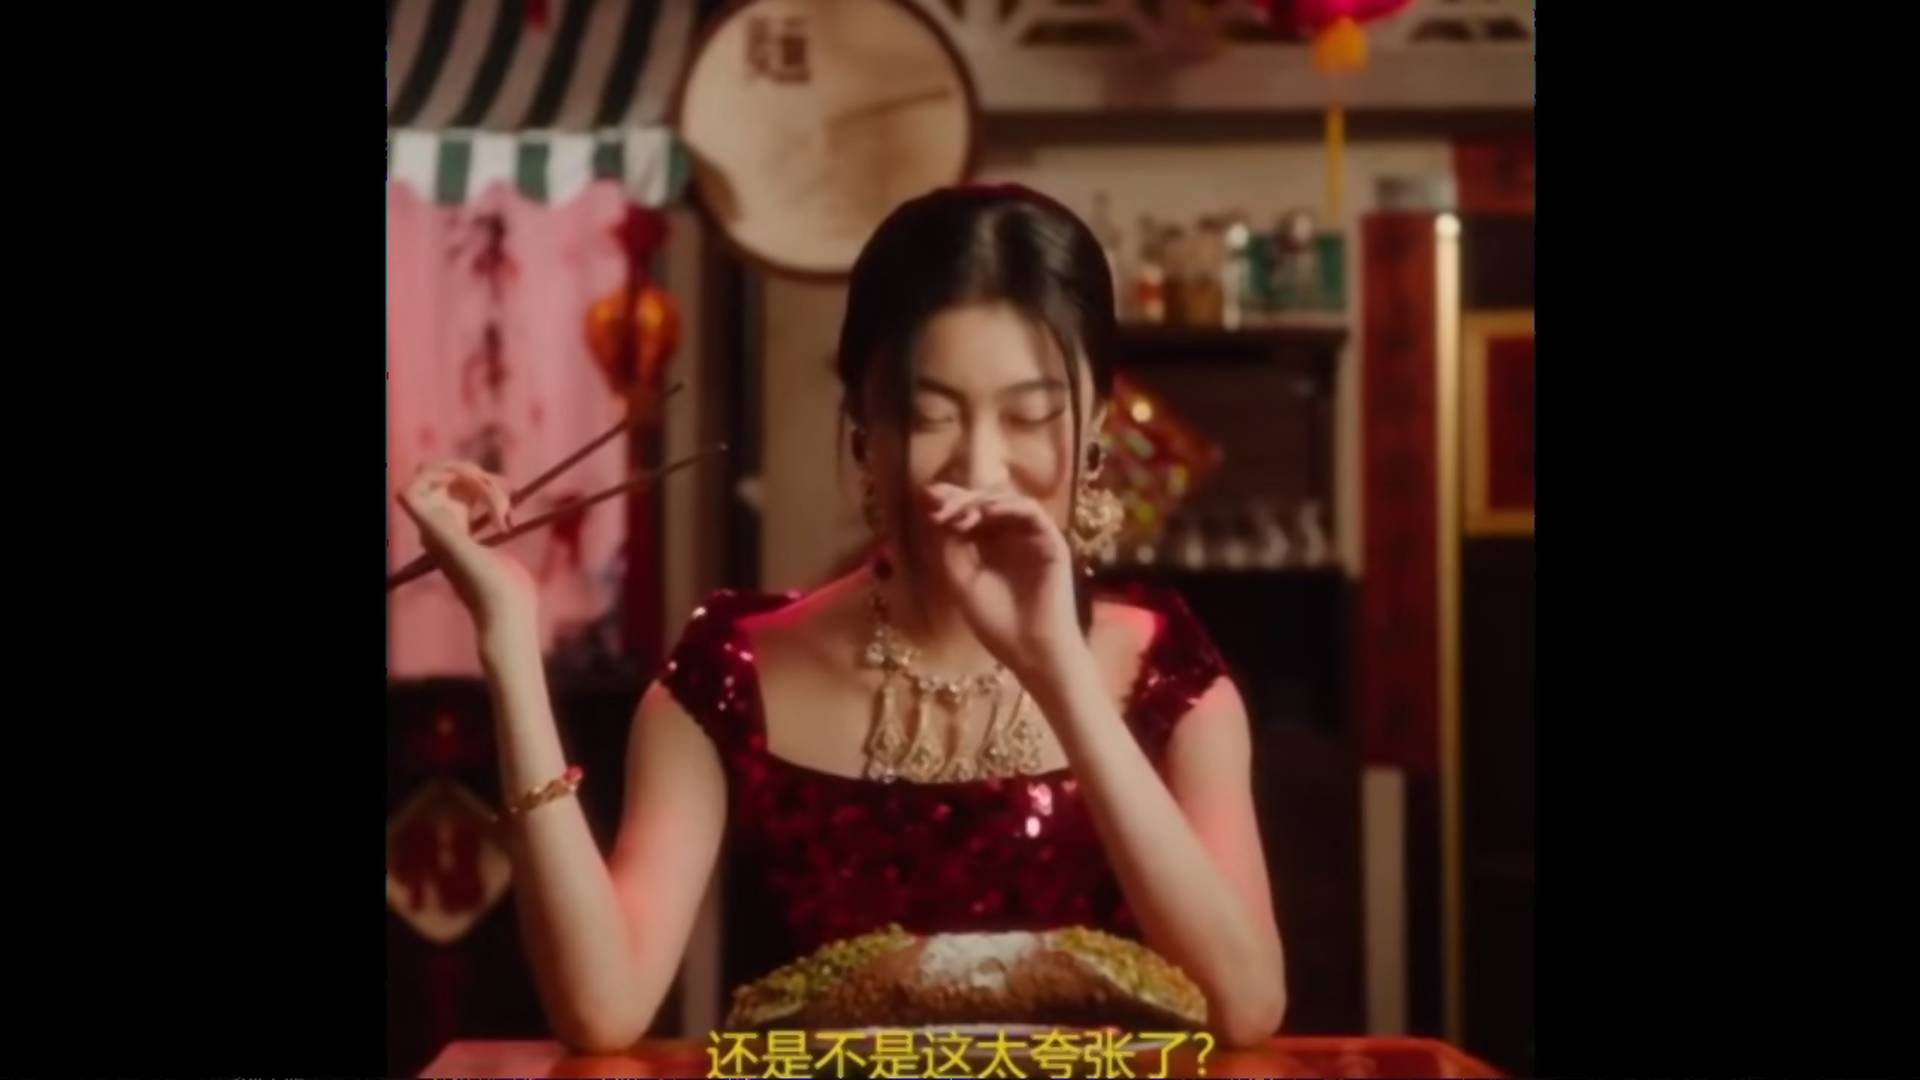 "Czy to nie jest dla Ciebie za duże?" - rasistowska i seksistowska kampania Dolce&Gabbana w Chinach. Projektanci przepraszają